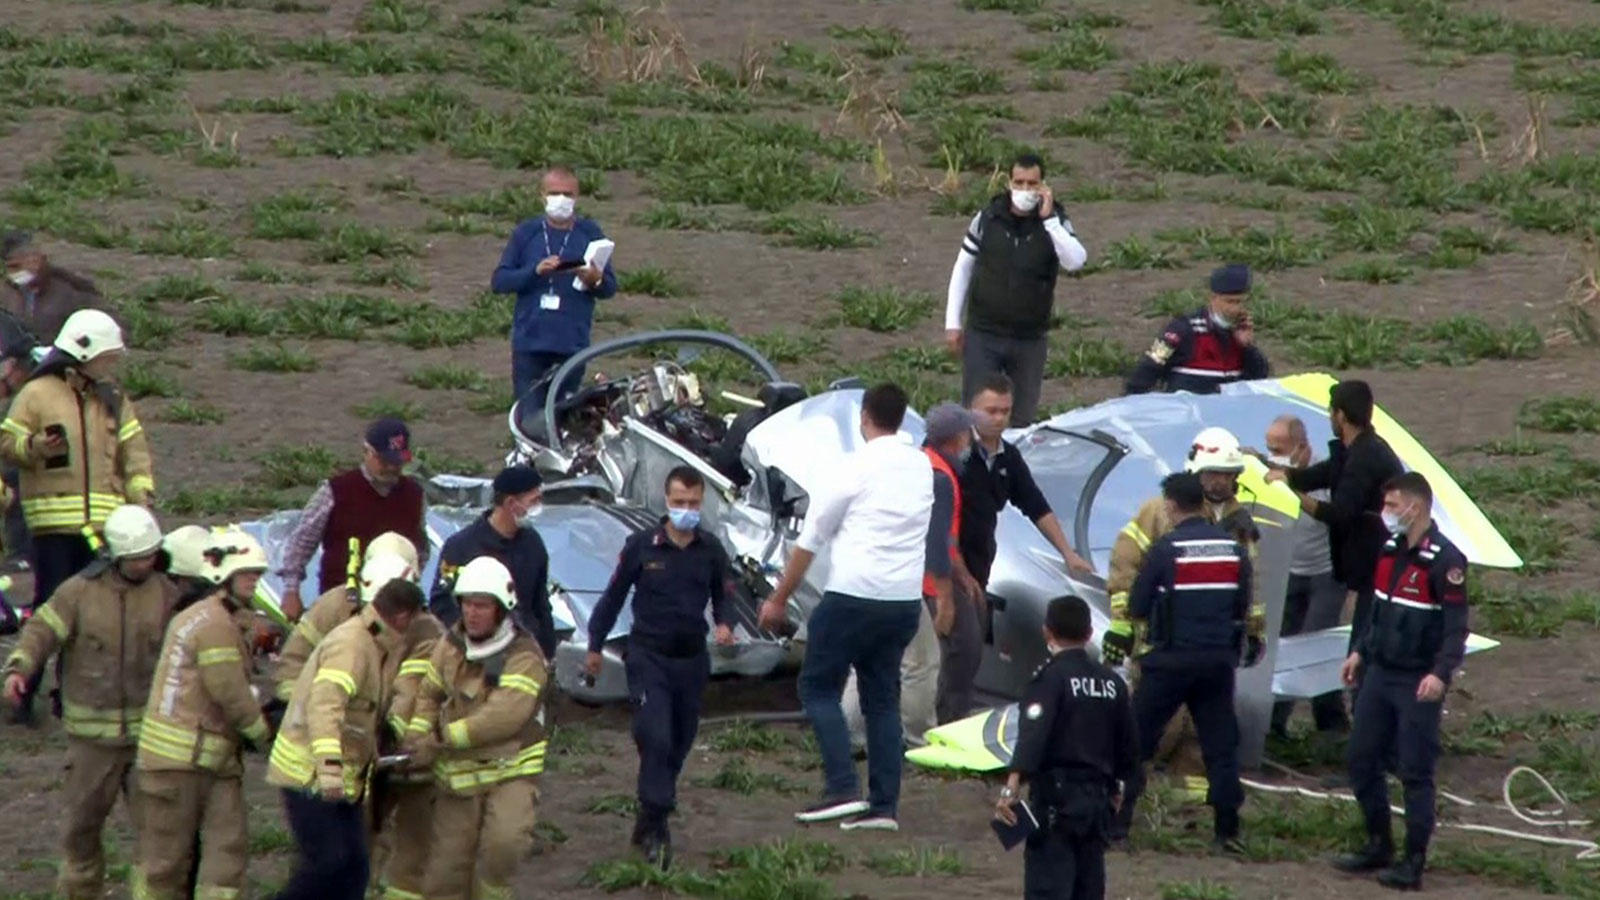 Büyükçekmece'de eğitim uçağı düştü: Pilot yaralı olarak kurtarıldı